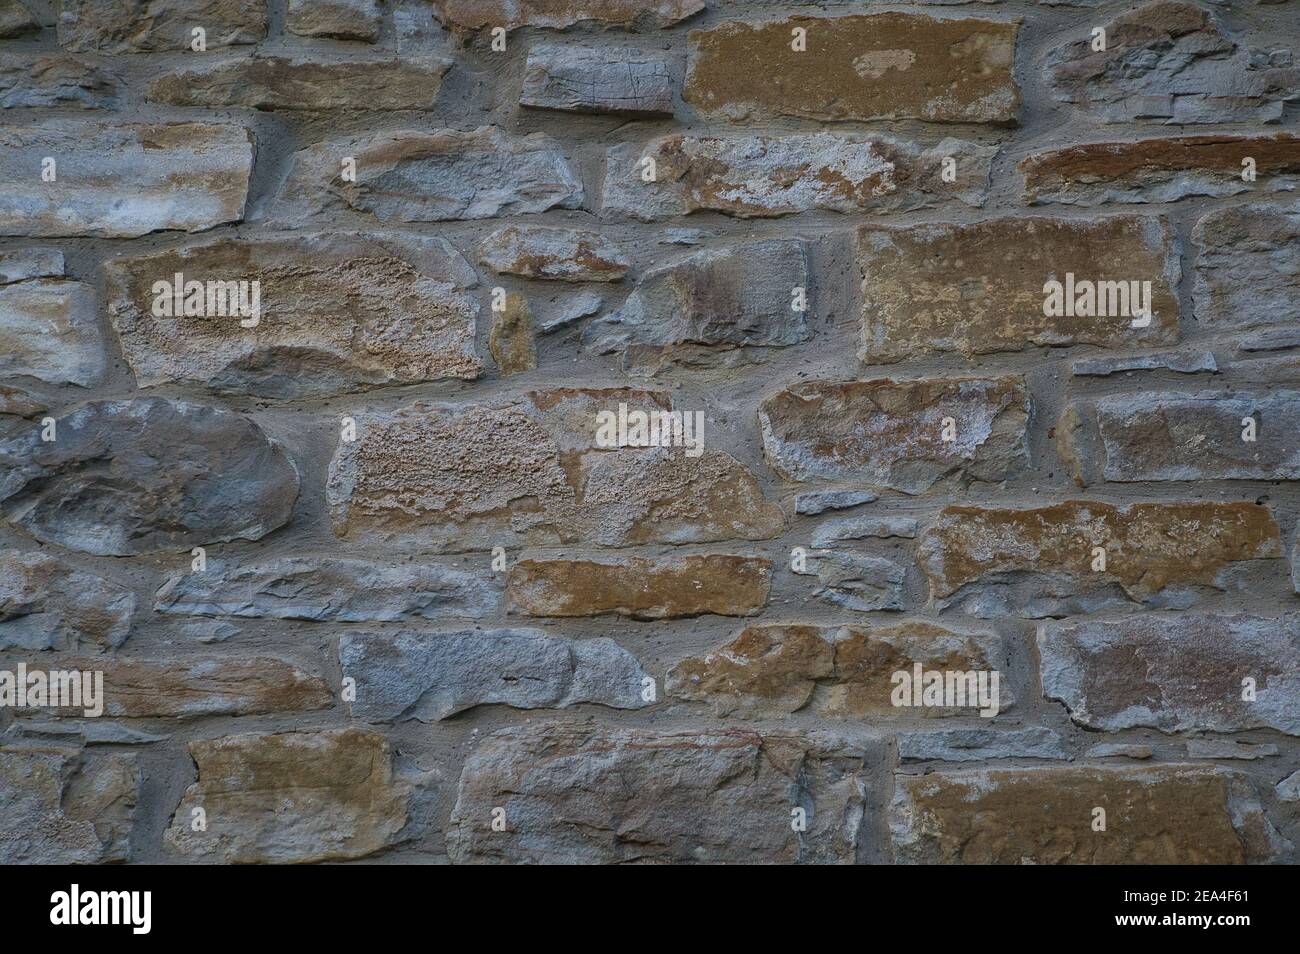 Pared de piedra de piedras naturales en diferentes tamaños; chapa de piedra rústica en tonos de marrón y beige; cubierta de pared con piedras naturales, azul Foto de stock